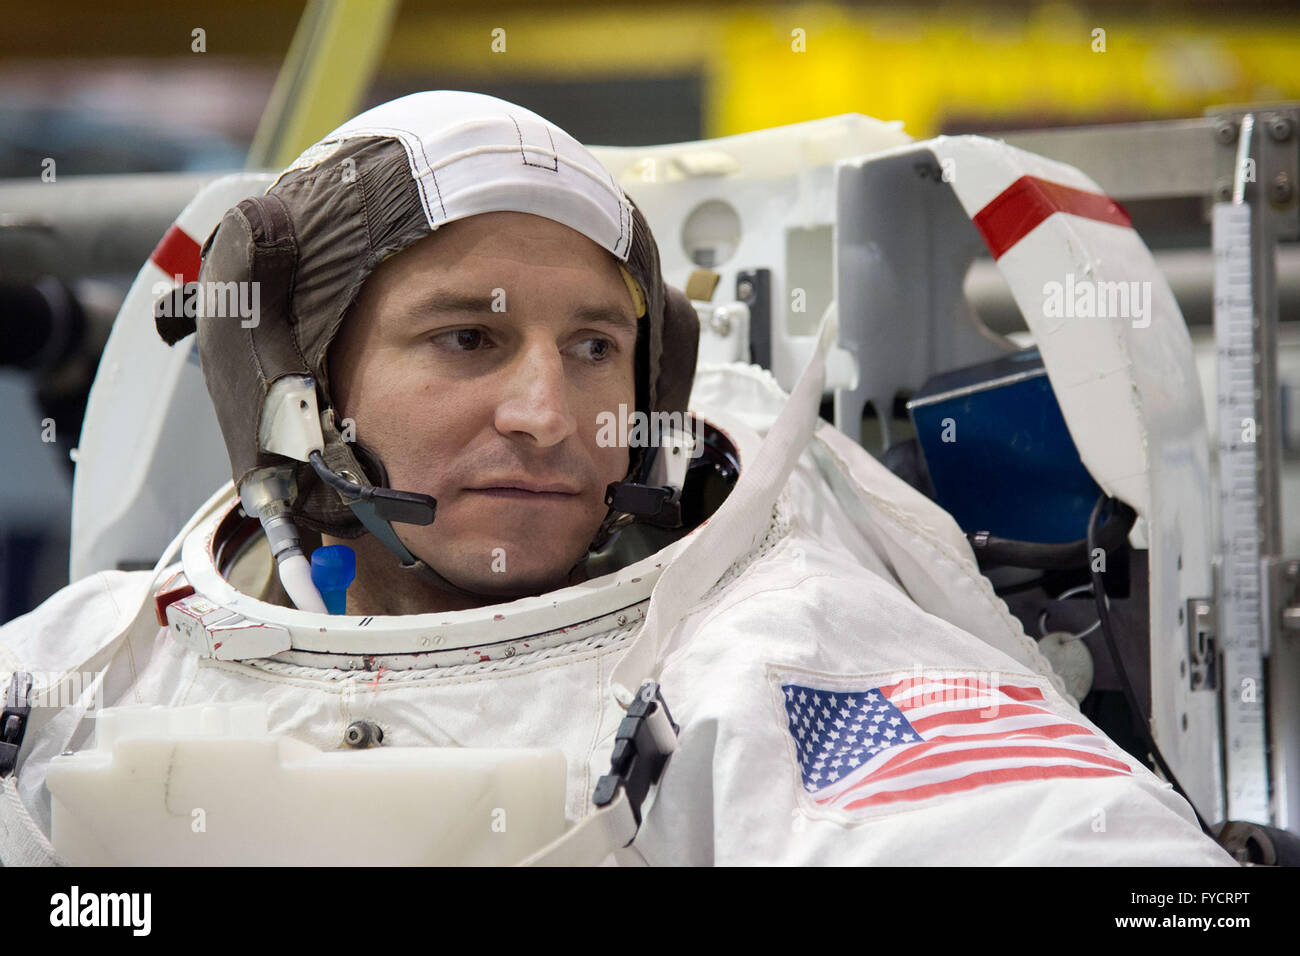 NASA-Astronauten Andrew Morgan in seinem Raumanzug Extravehicular Mobility Unit in ISS EVA Ausbildung bei neutralen Auftrieb Labor Johnson Space Center 27. Februar 2015 in Houston, Texas. Stockfoto